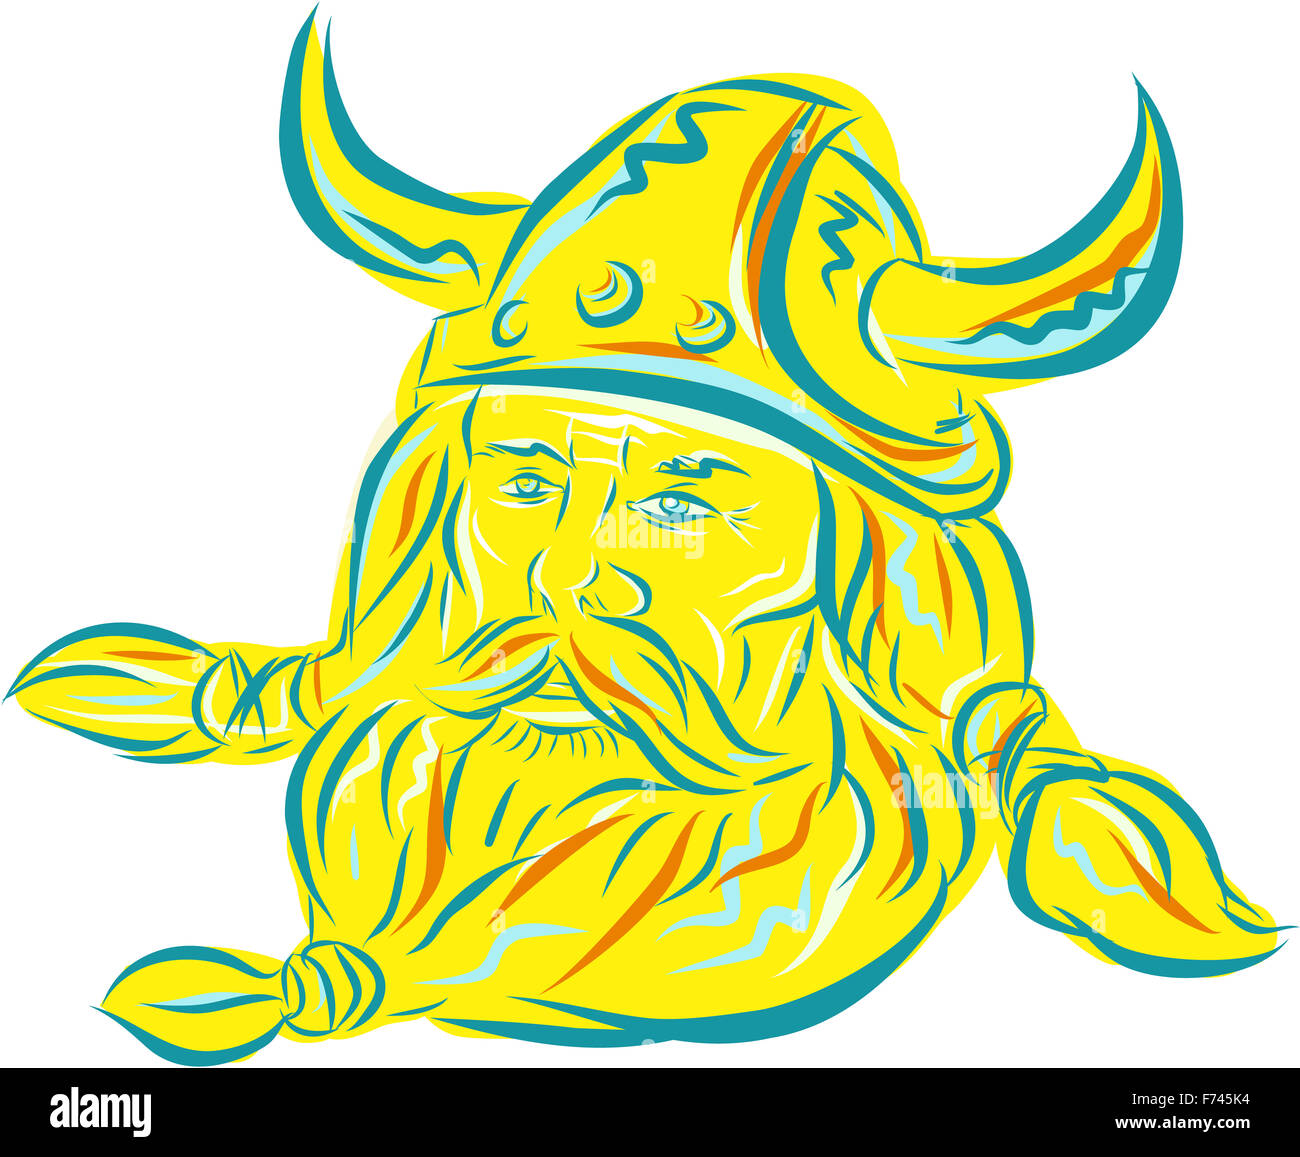 Gravure Gravure illustration style artisanal d'un norseman guerrier viking raider chef barbare barbe avec vue de l'avant ensemble isolées sur fond blanc. Banque D'Images